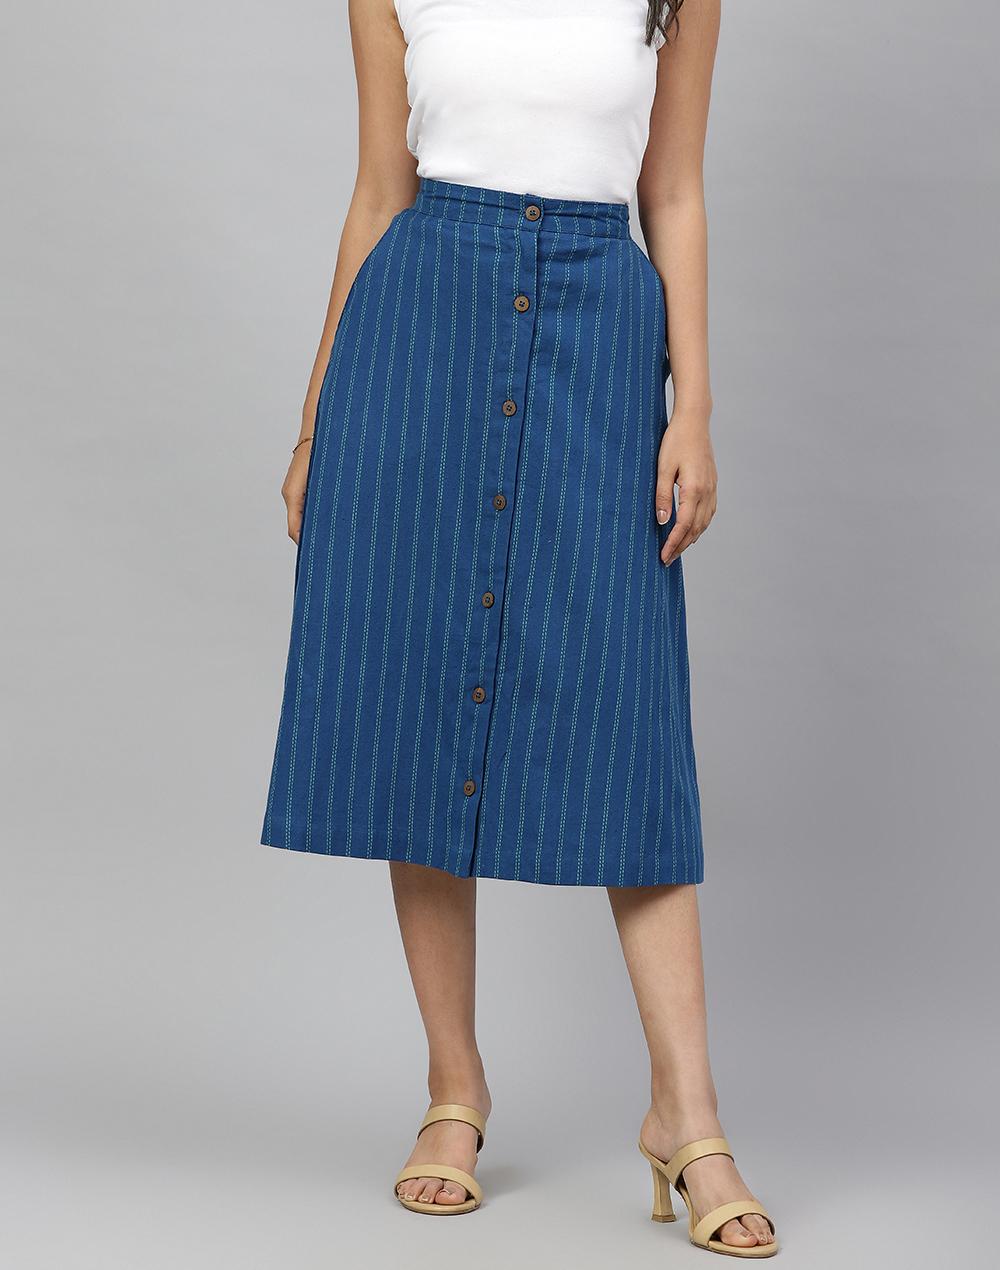 fabnu blue cotton linen knee length skirt midi